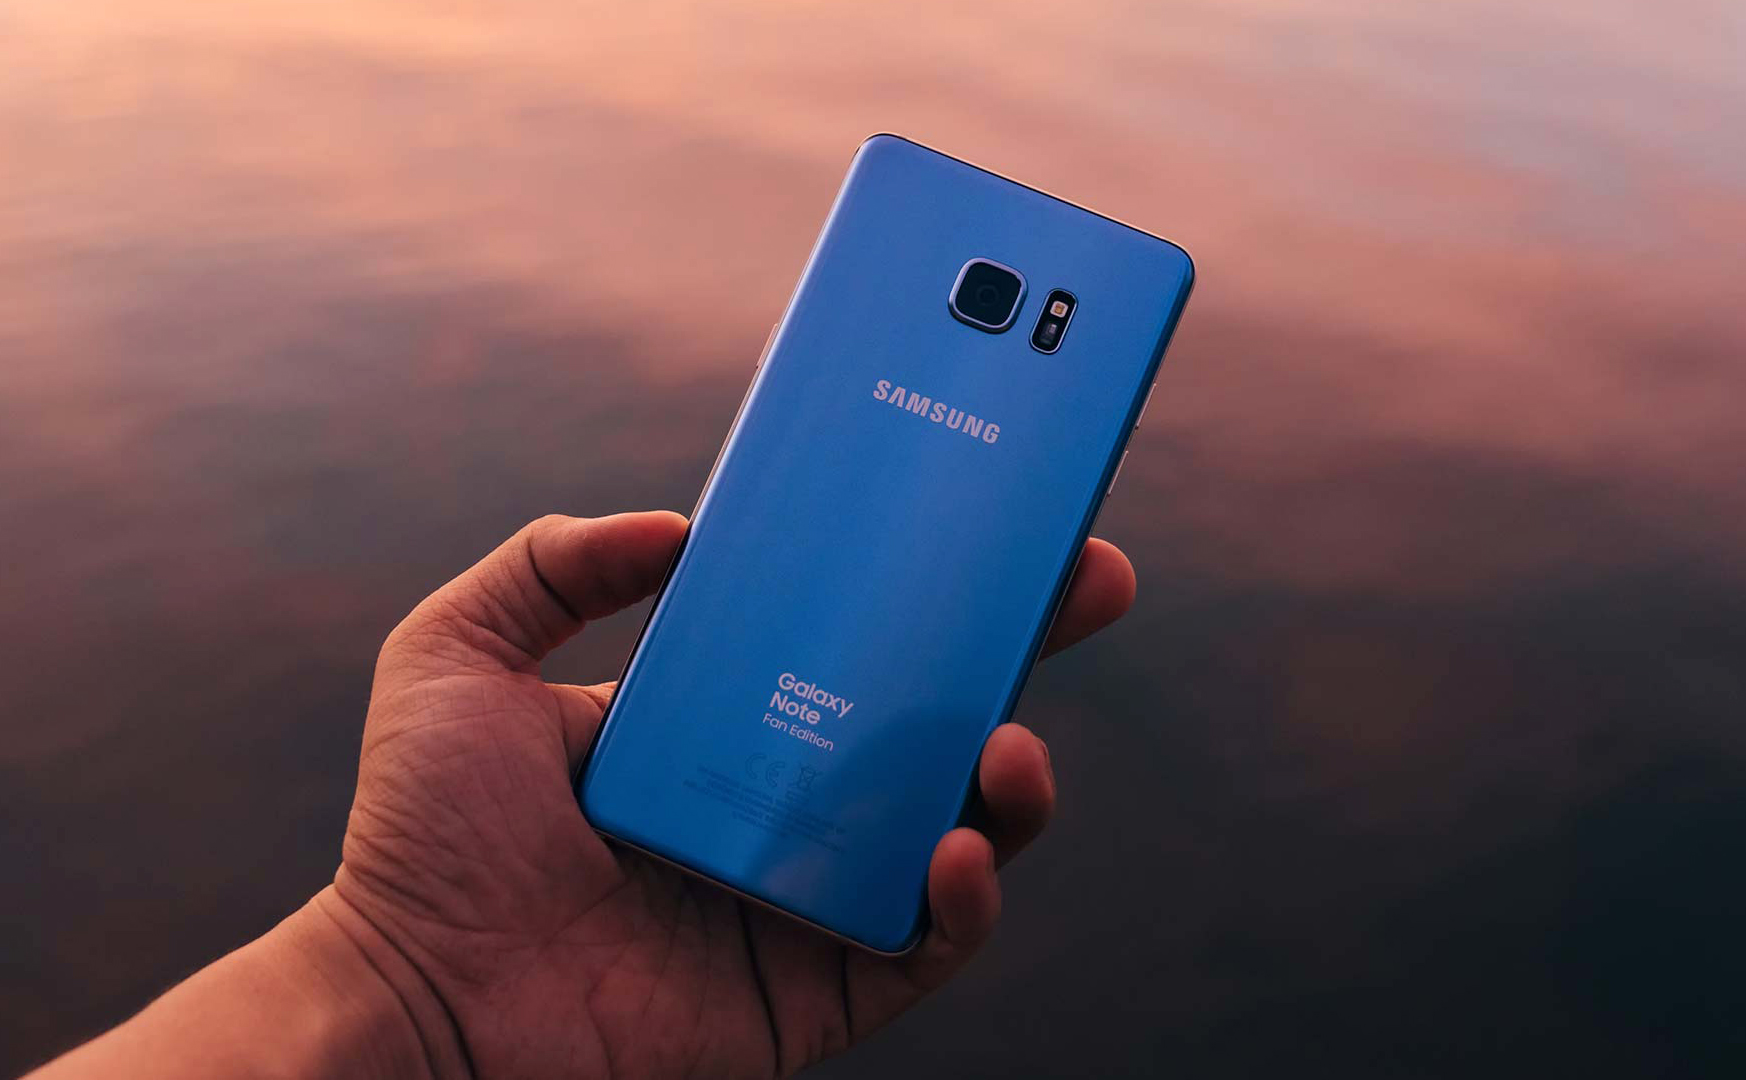 Samsung Galaxy: những gì đã làm được, và năm 2019 sẽ có gì mới?